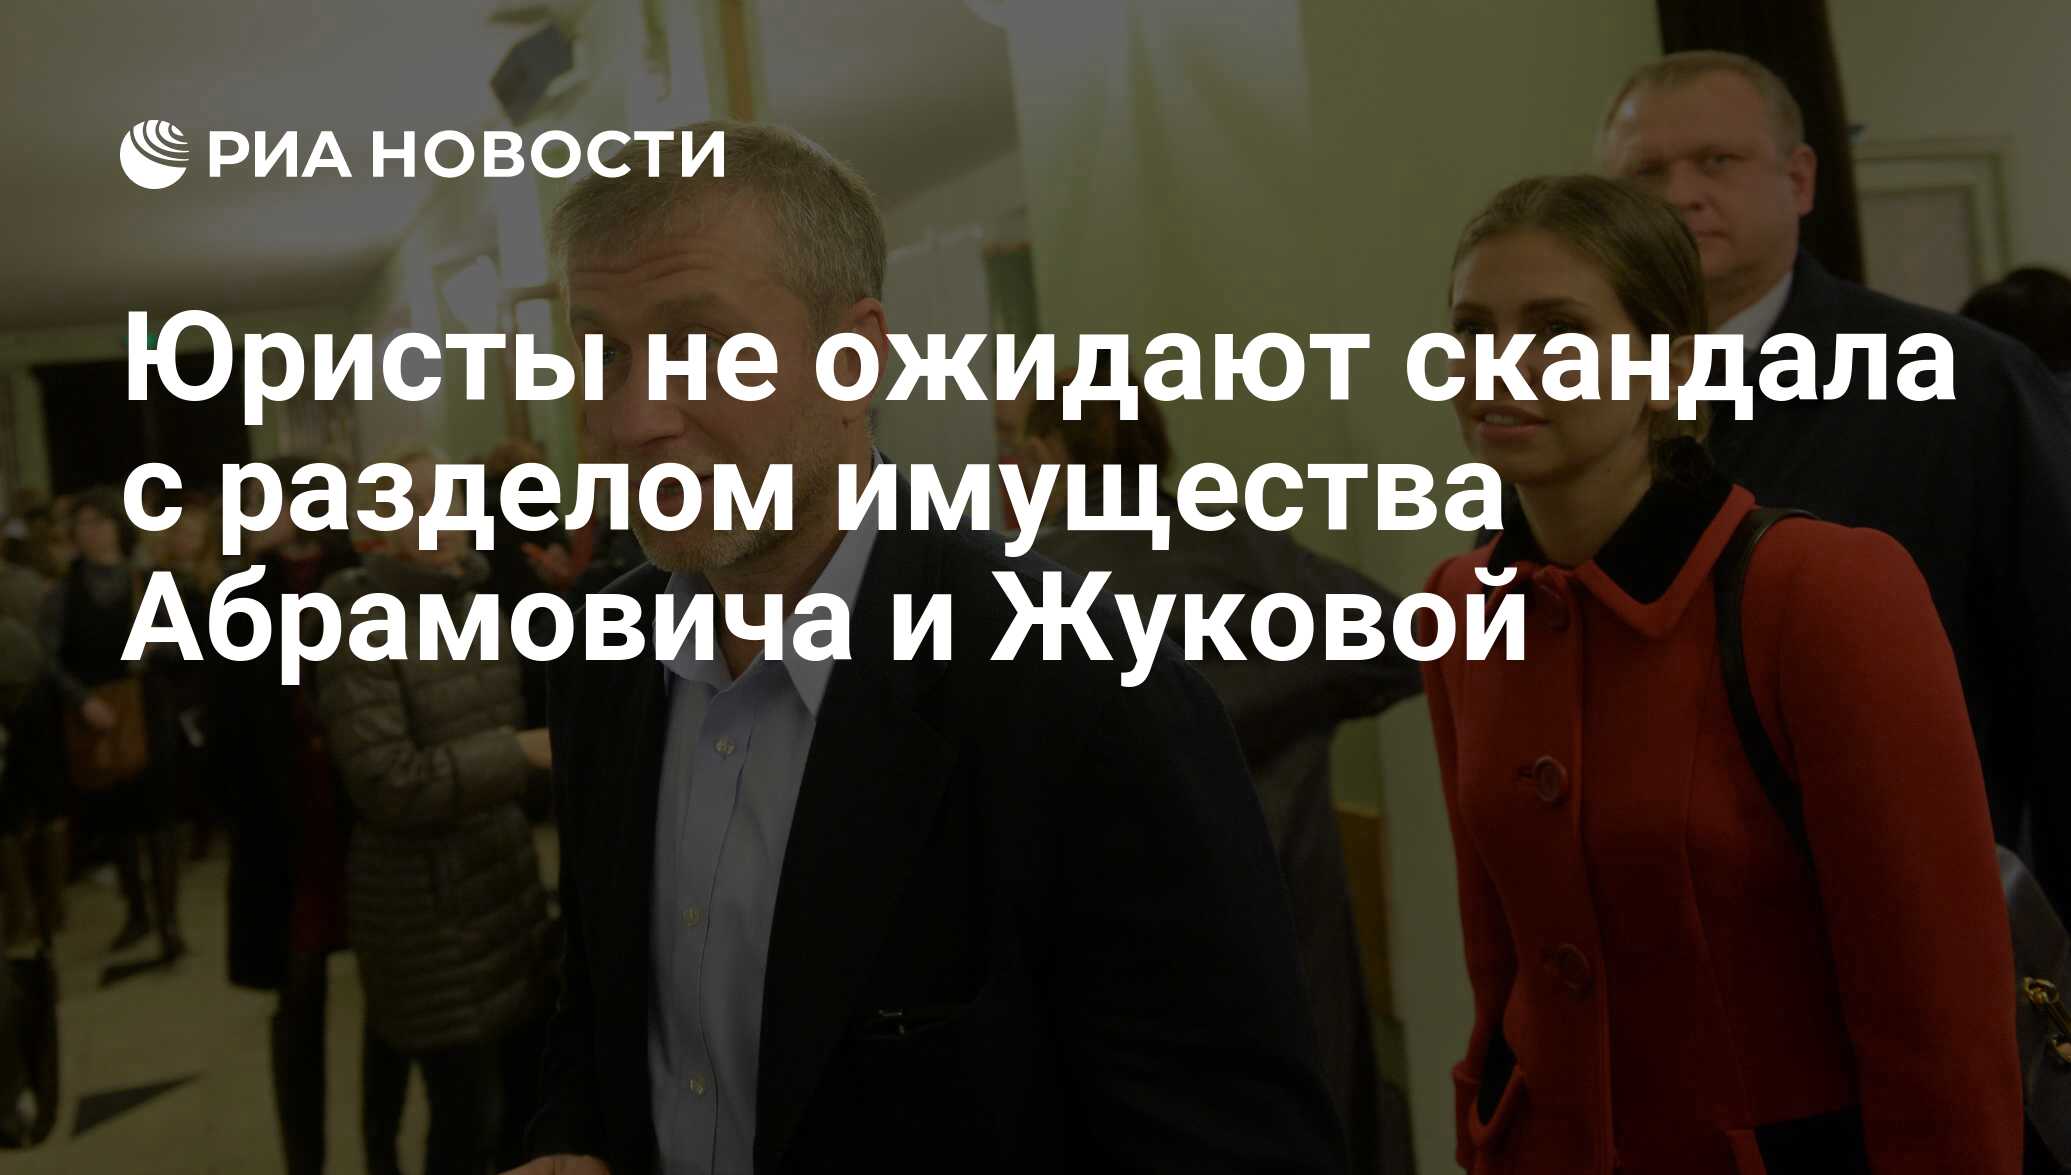 Юристы не ожидают скандала с разделом имущества Абрамовича и Жуковой